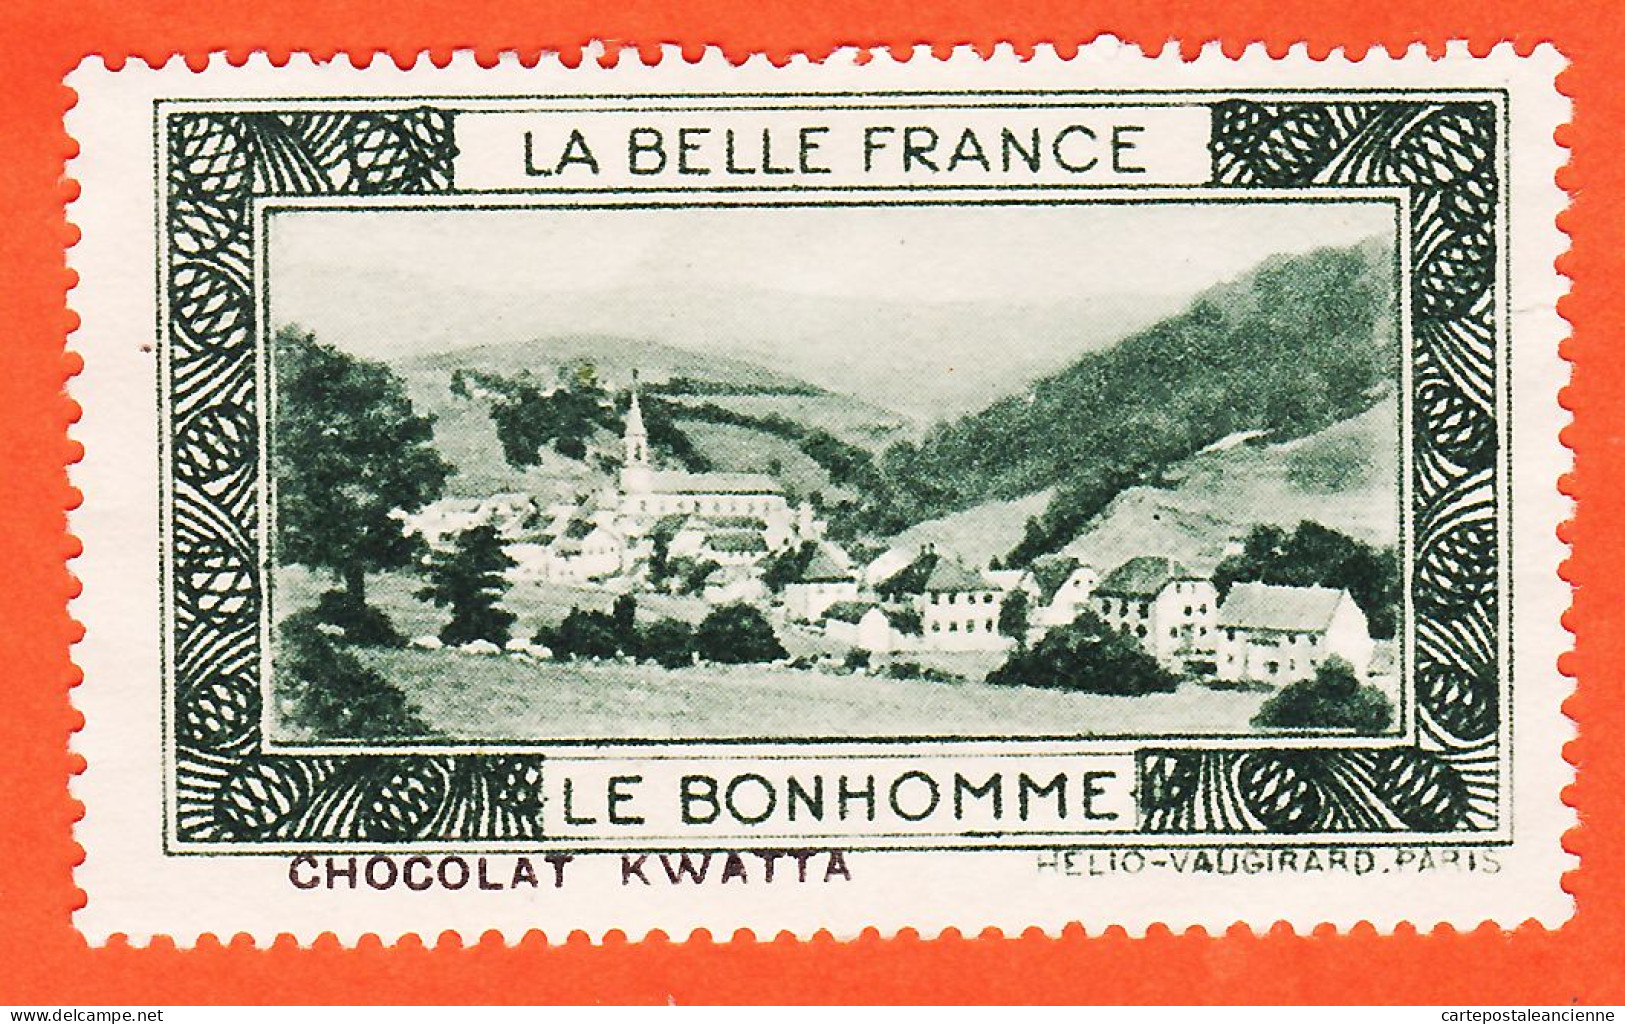 00162 ● (2) LE BONHOMME 68-Haut Rhin Pub Chocolat KWATTA Vignette Collection BELLE FRANCE HELIO-VAUGIRARD Erinnophilie - Tourismus (Vignetten)